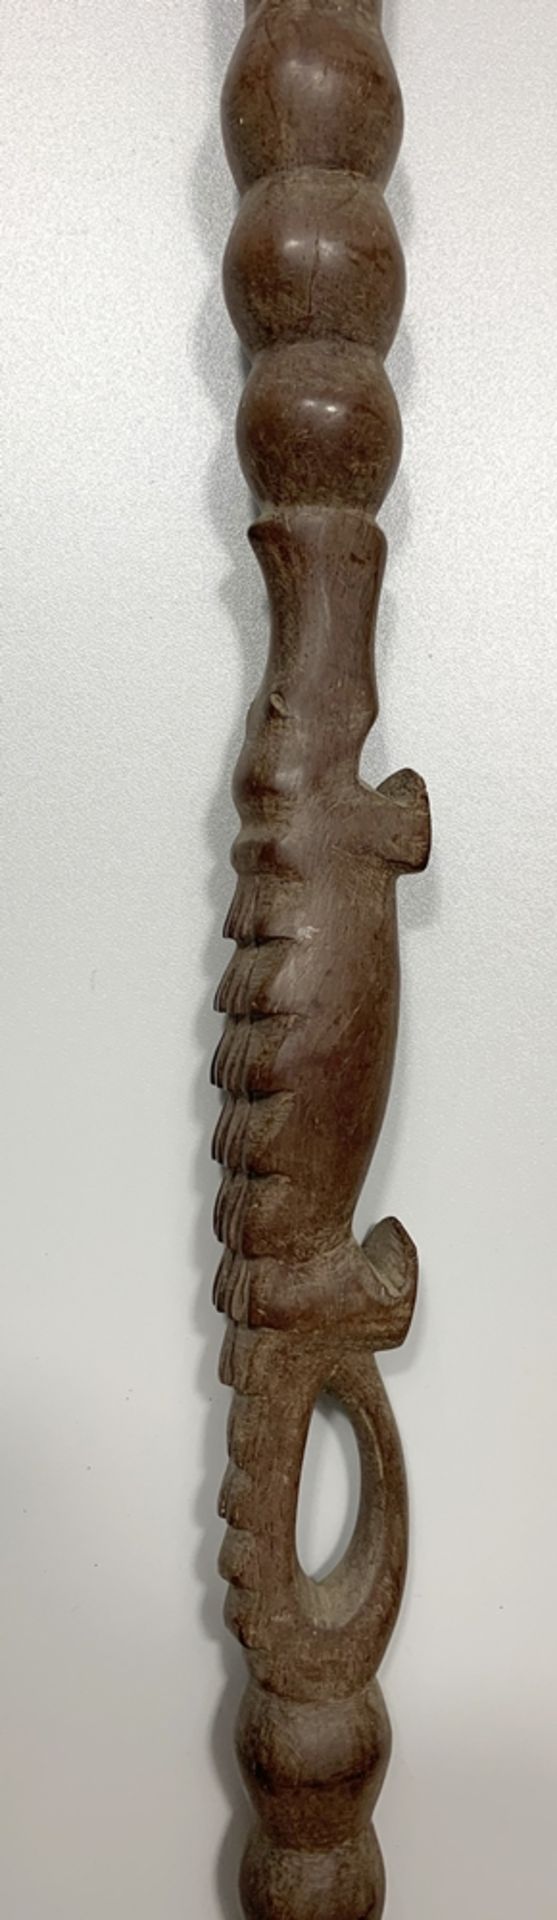 Ritualstab mit Löwenkopf, Ebenholz/Bein, mittiger Griff mit plastisch geschnitztem Krokodil, an - Bild 3 aus 3